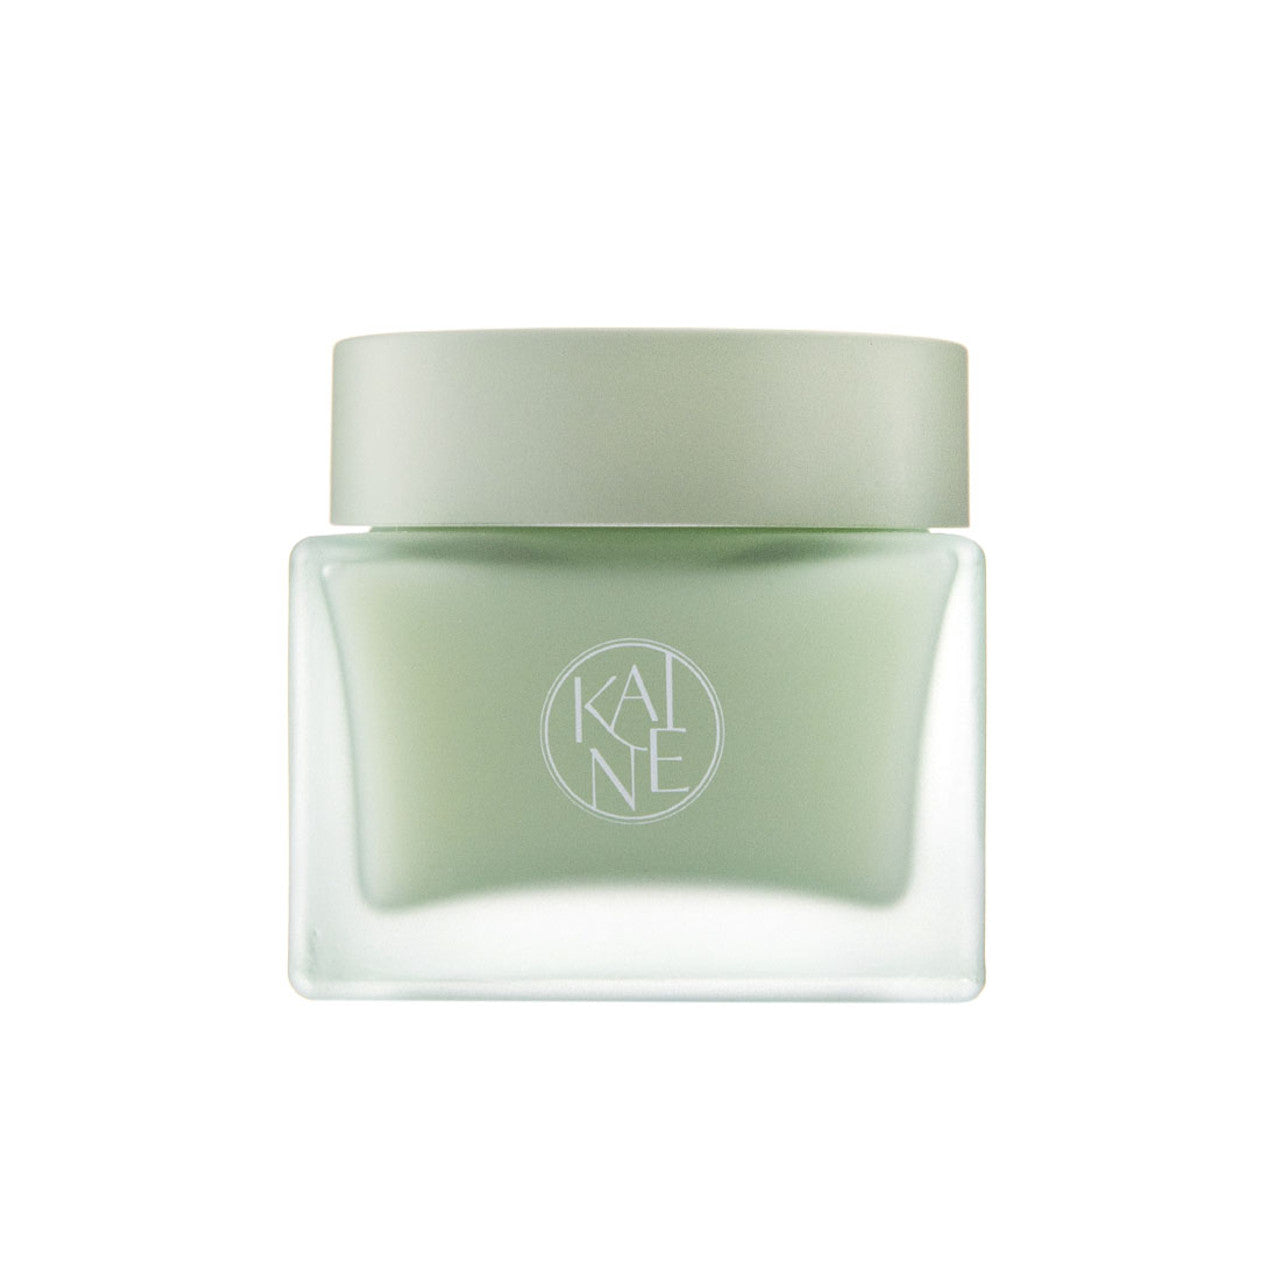 Kaine Green Calm Aqua Cream 70ML